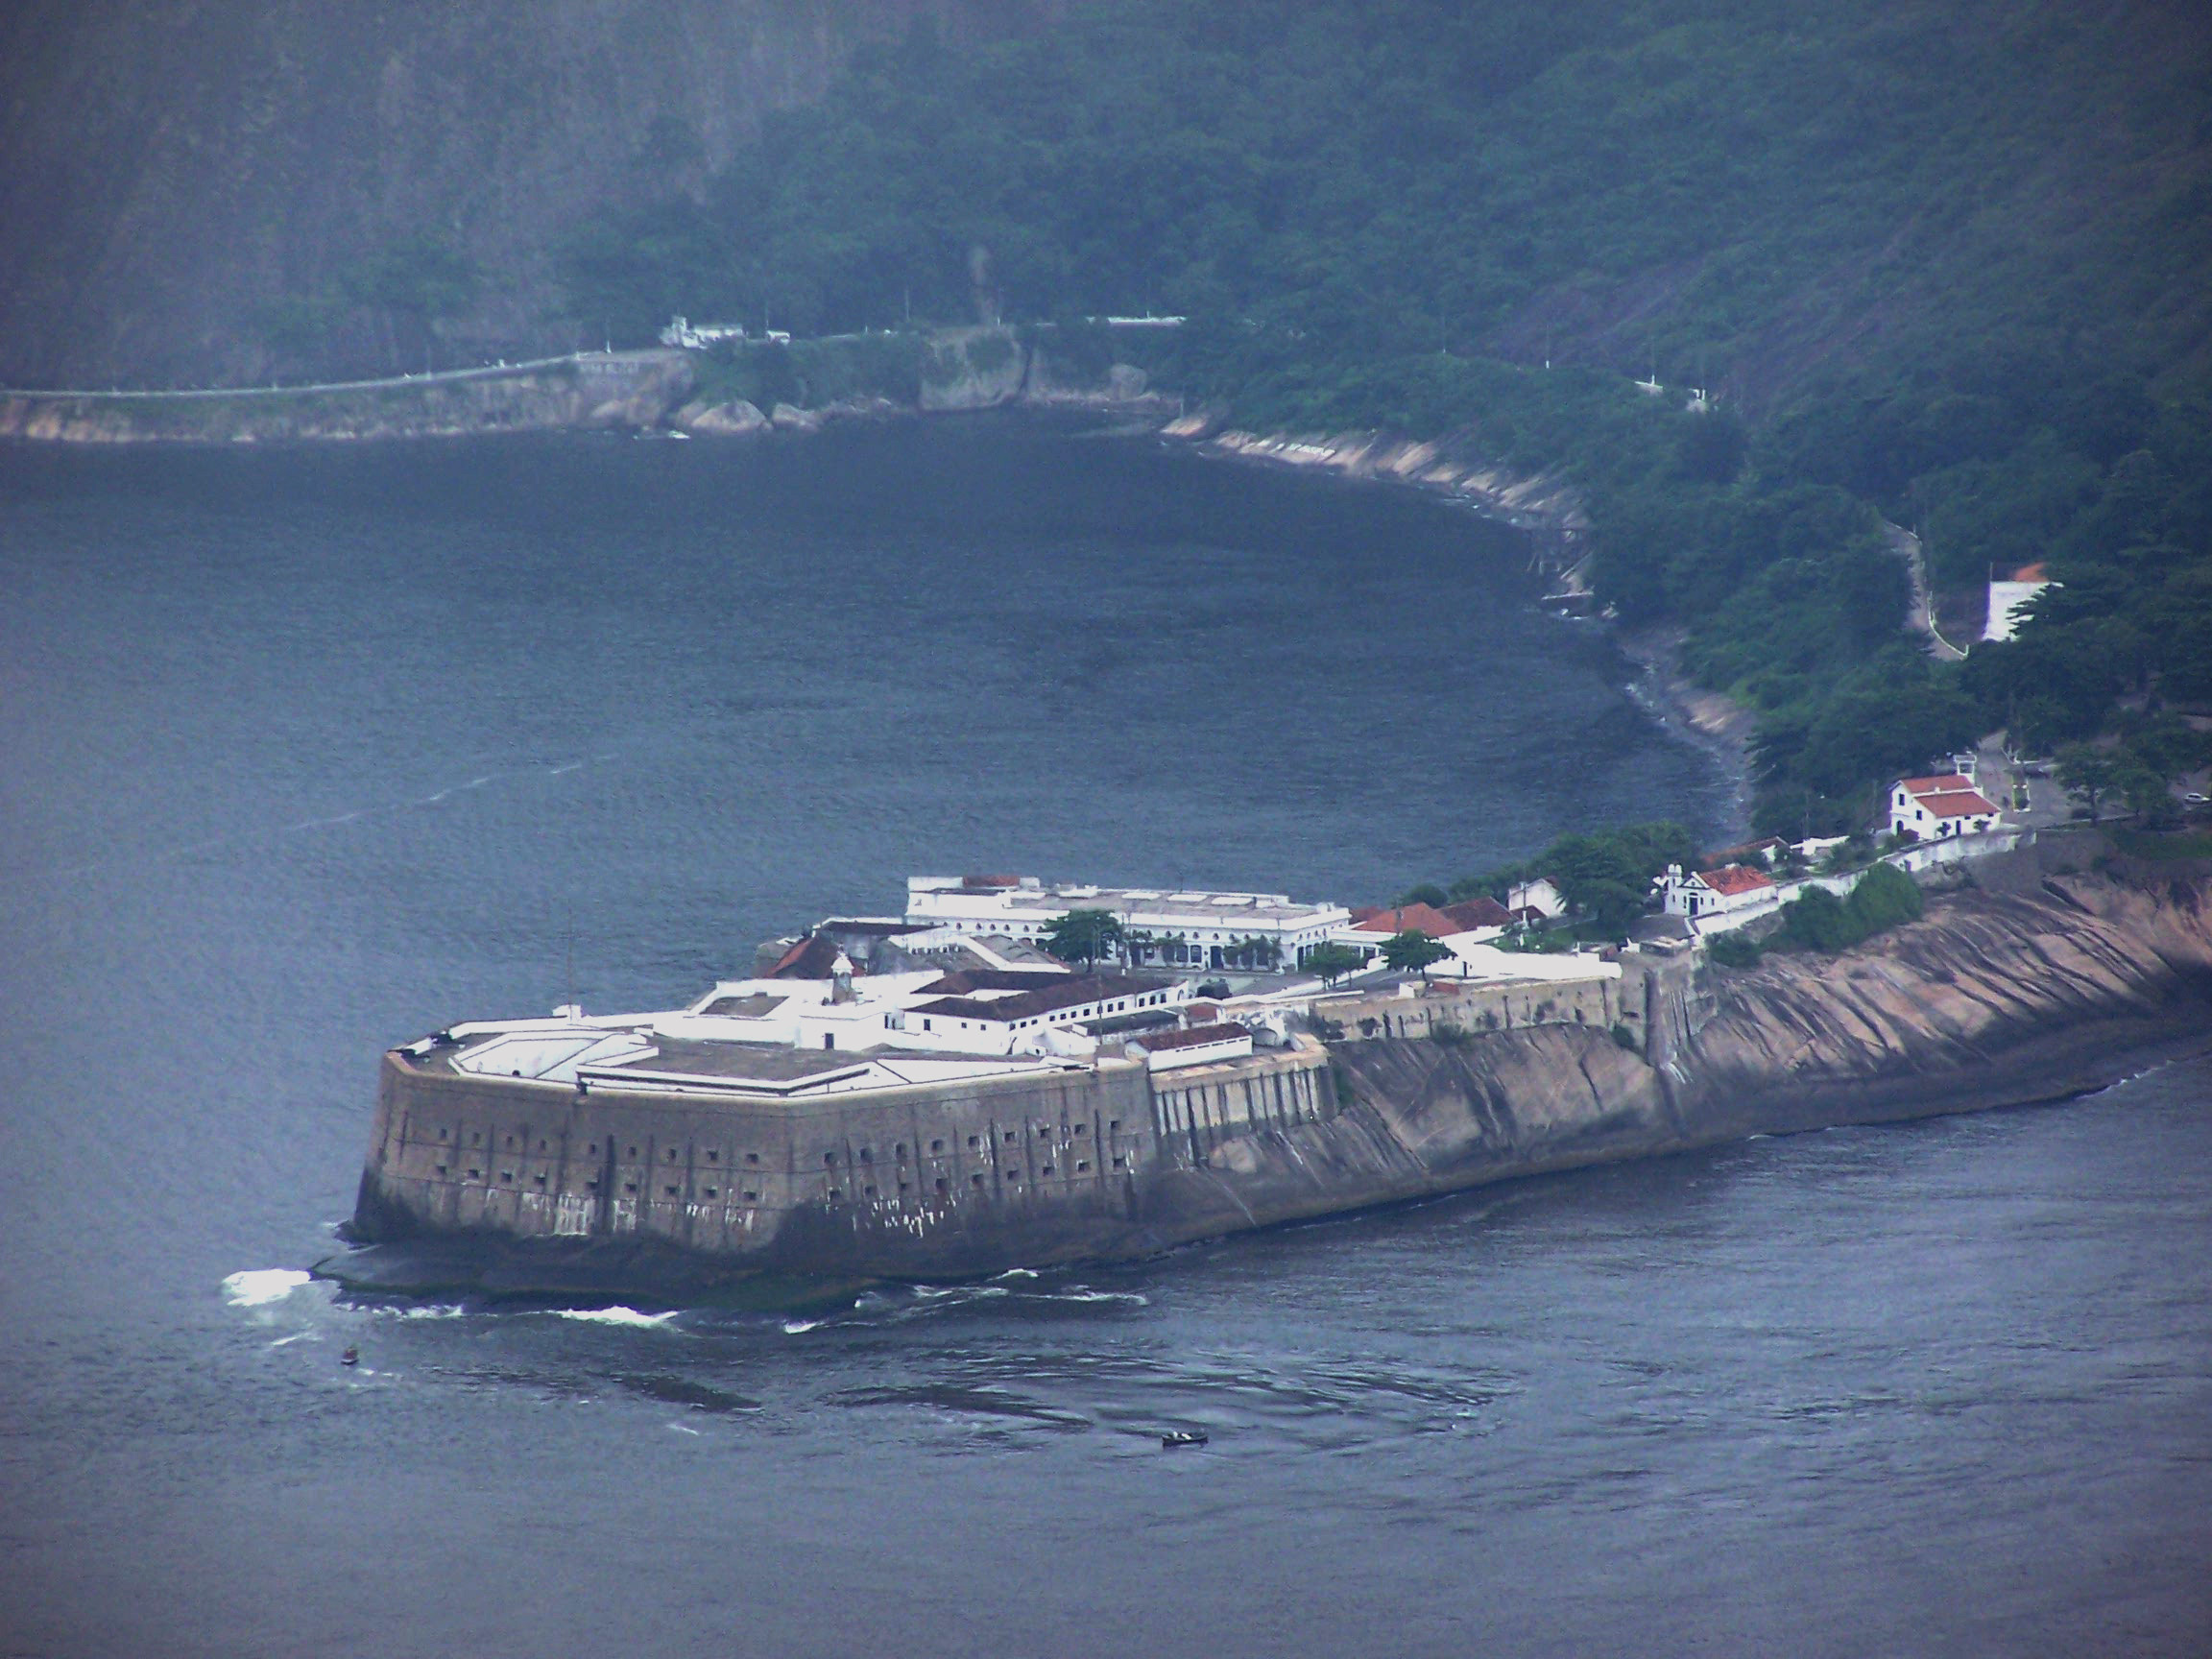 Santa Cruz Fortress in Niteroi, Brazil image - Free stock photo ...